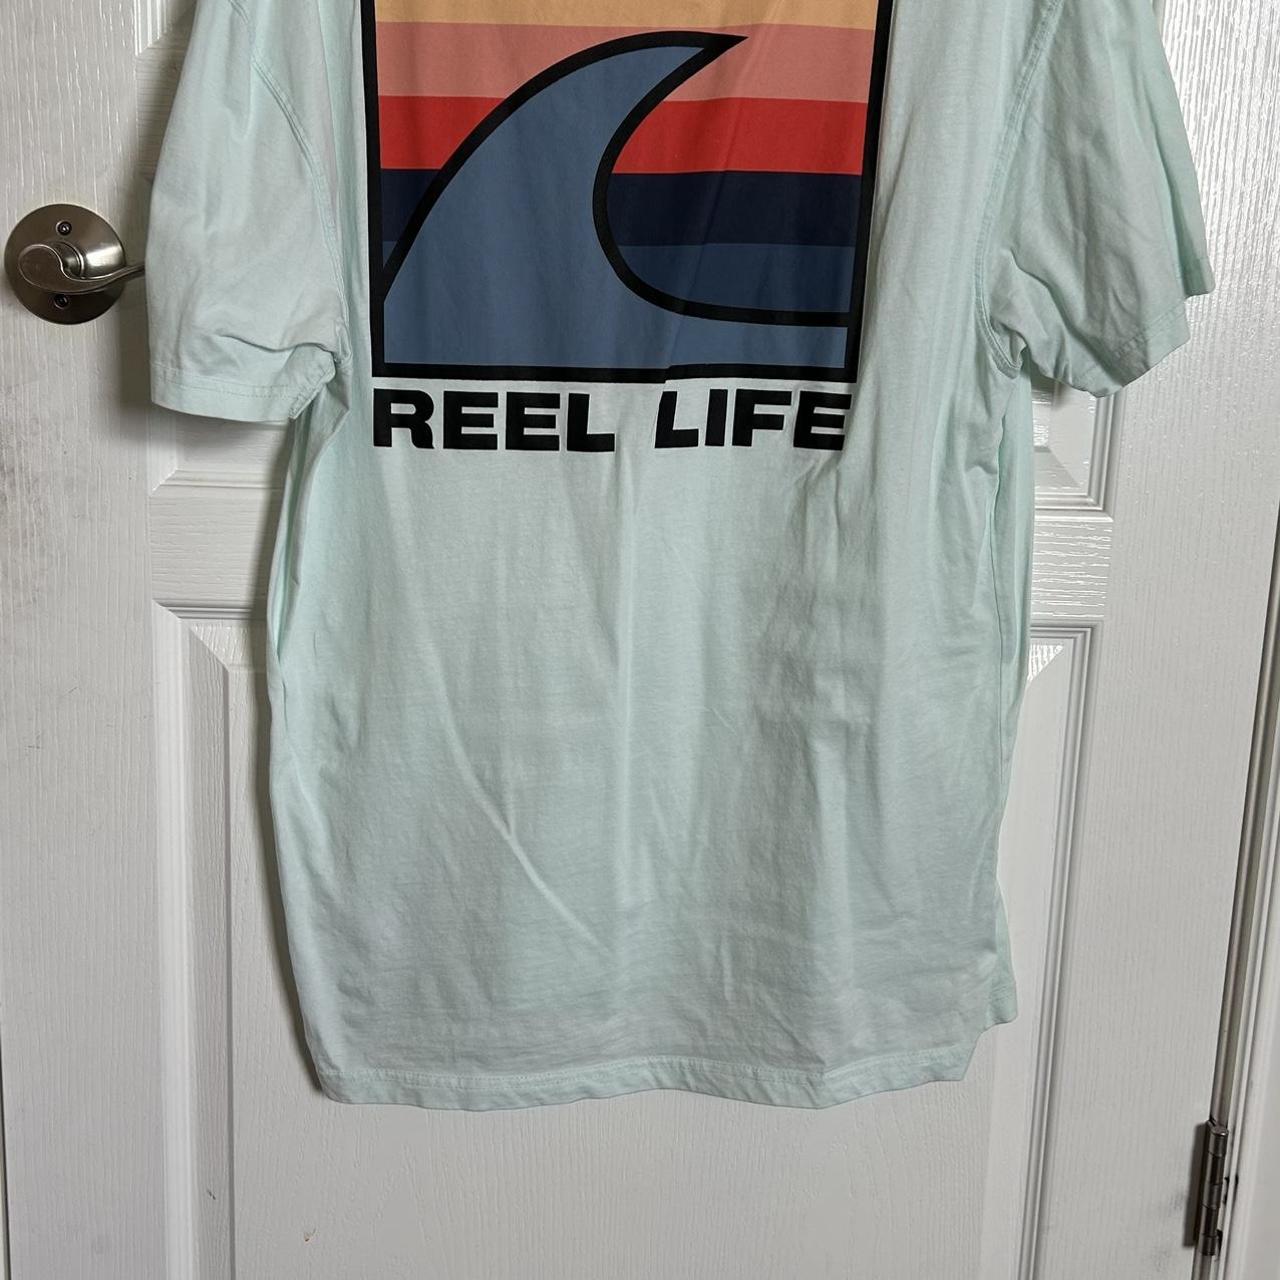 Reel life mens fishing tshirt I will take most good - Depop